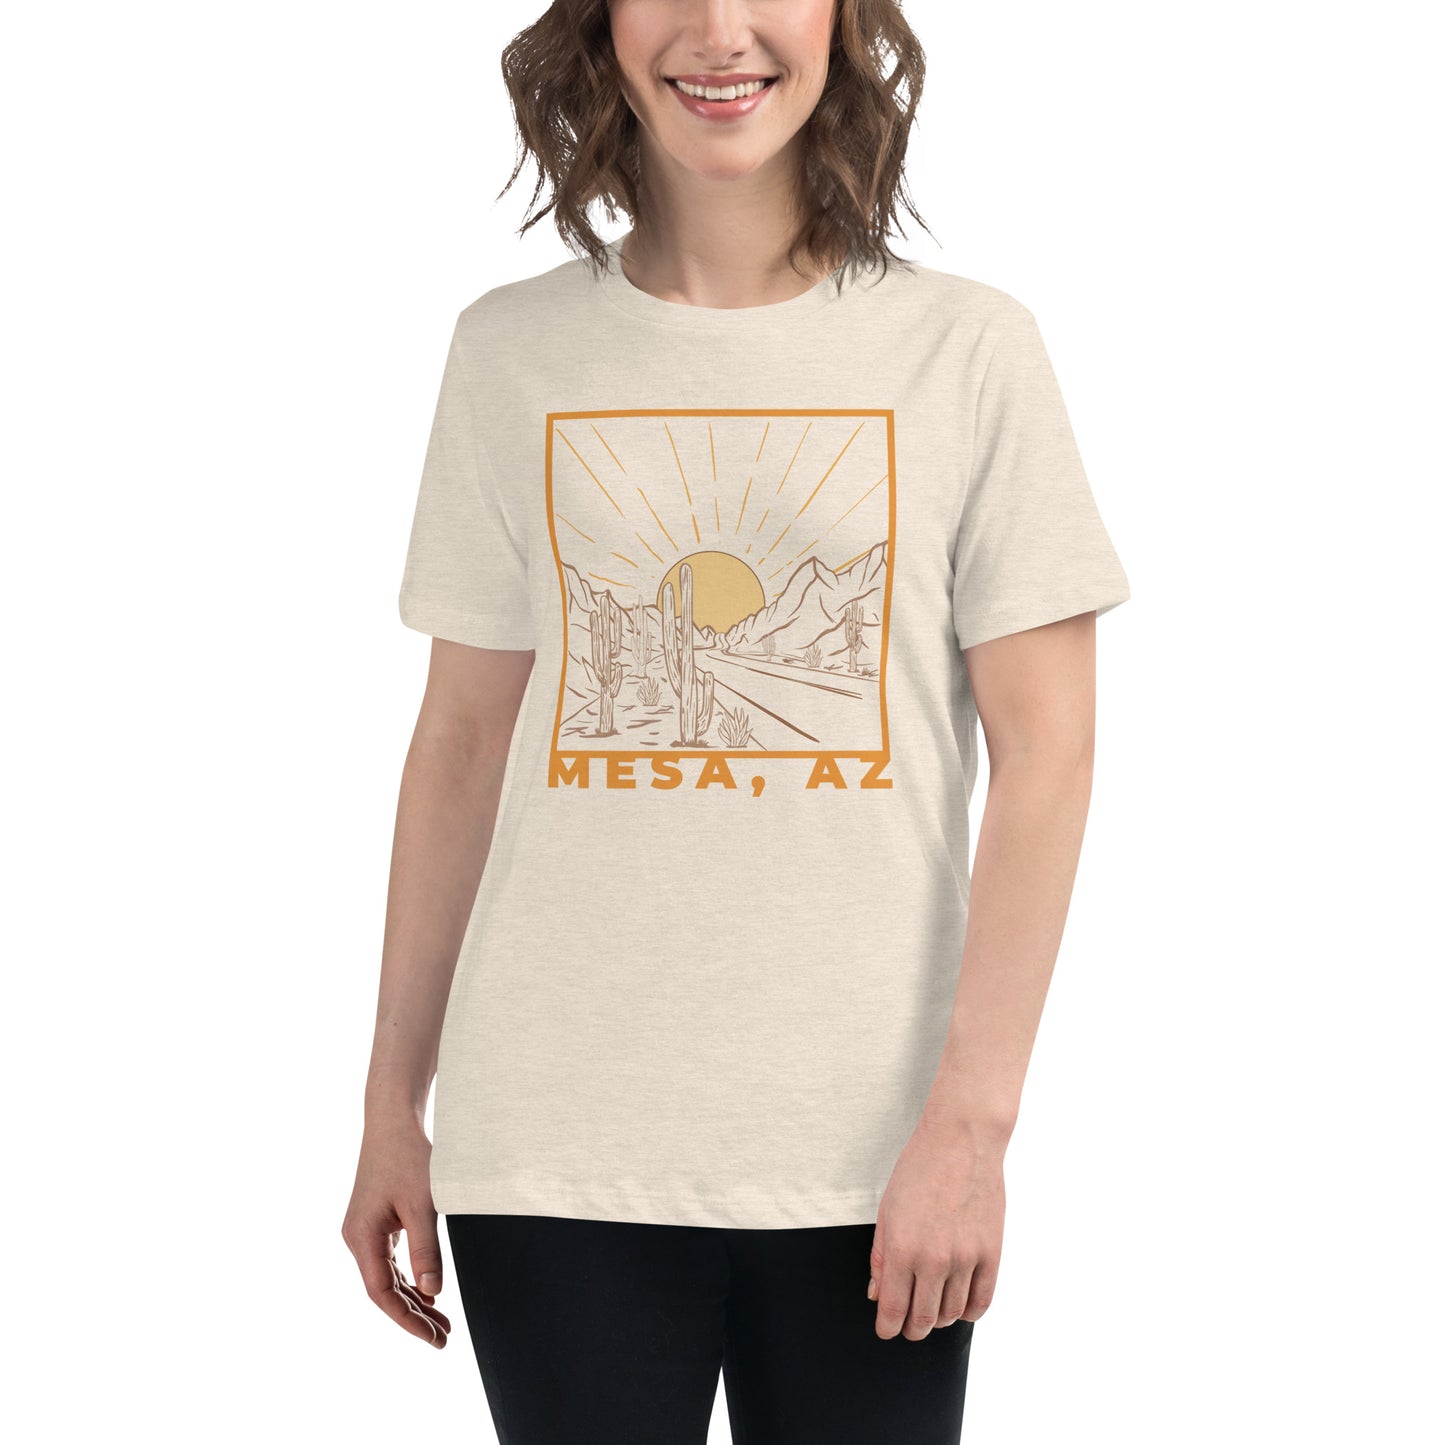 Mesa Sun Women's Relaxed T-Shirt